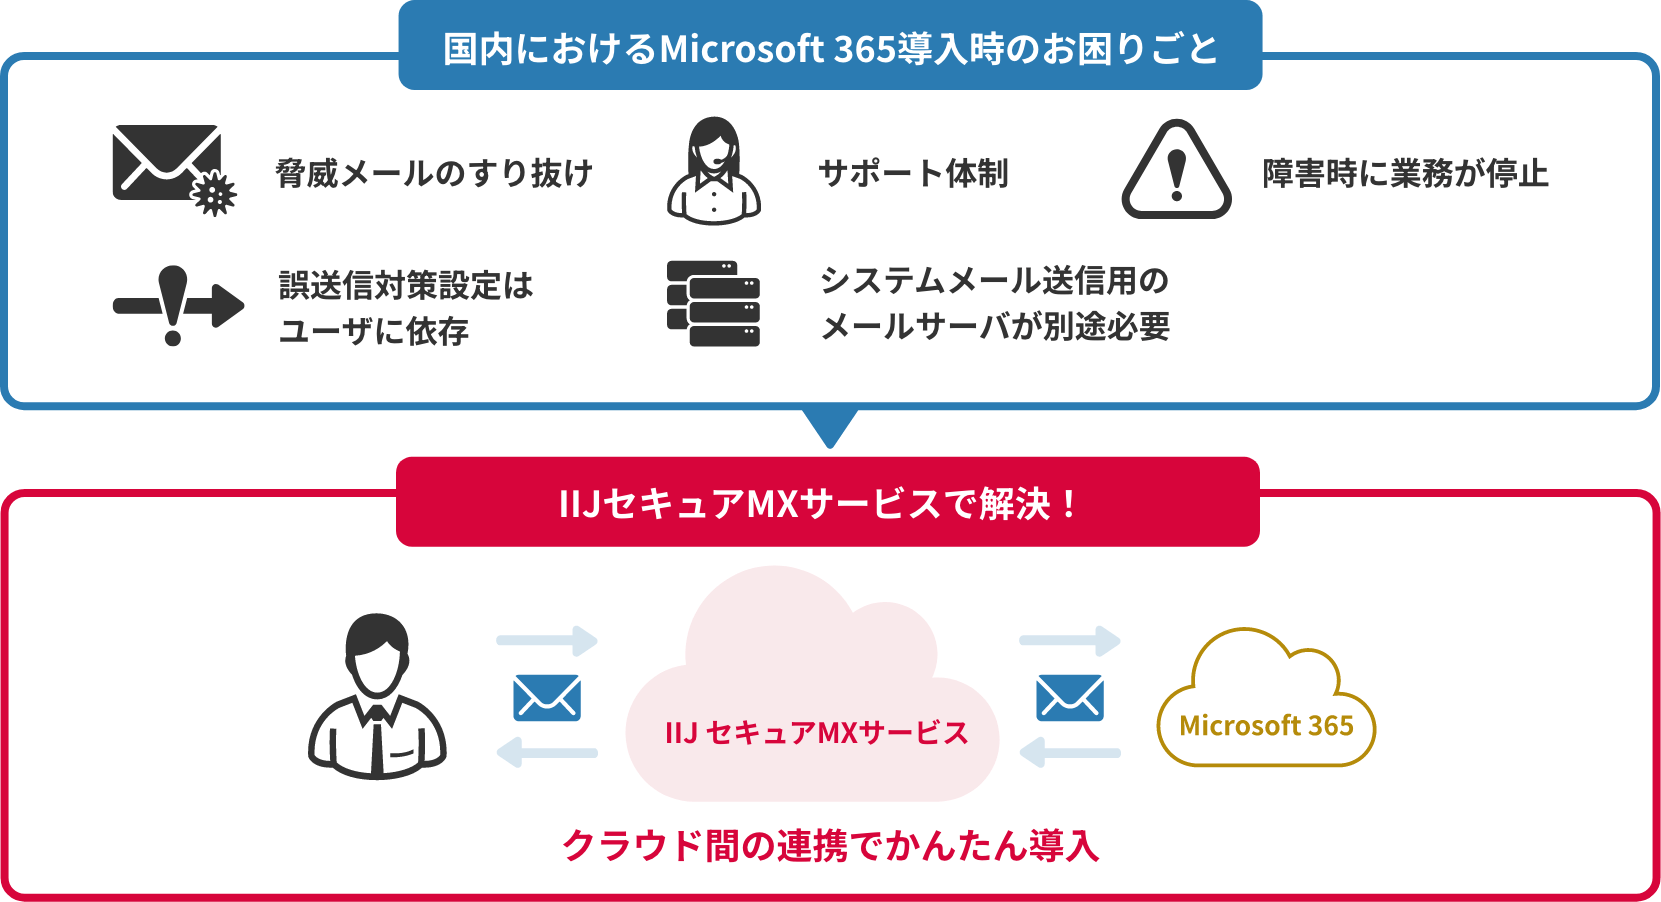 国内におけるMicrosoft 365導入時のお困りごとは、IIJセキュアMXサービスで解決